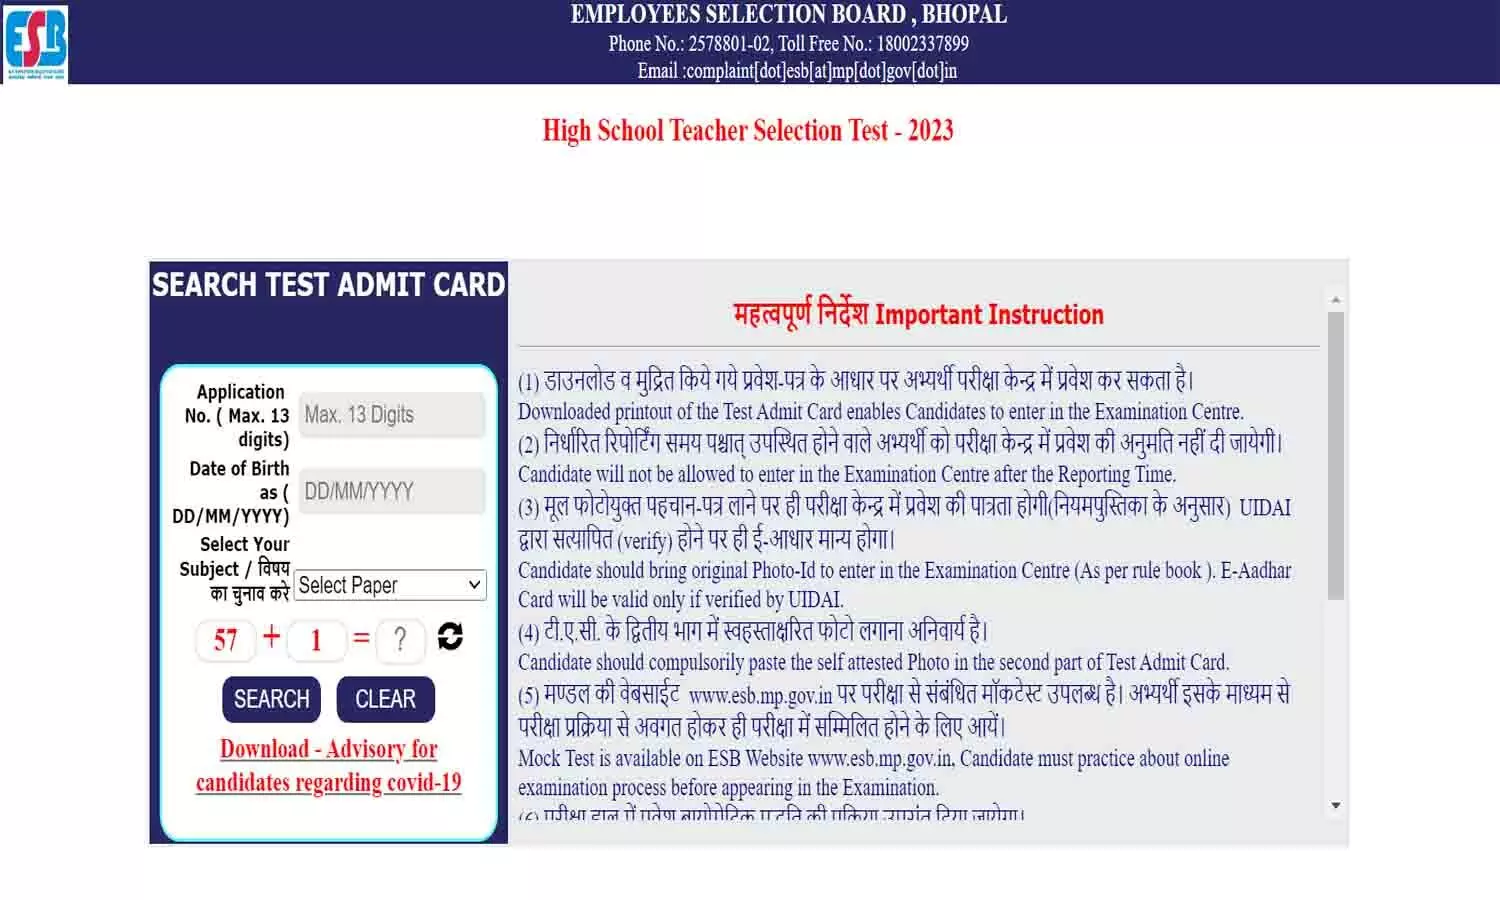 Madhya Pradesh Employees Selection Board ने जारी किया हाई स्कूल शिक्षक चयन परीक्षा का एडमिट कार्ड, esb.mp.gov.in पर जाकर डाउनलोड करे